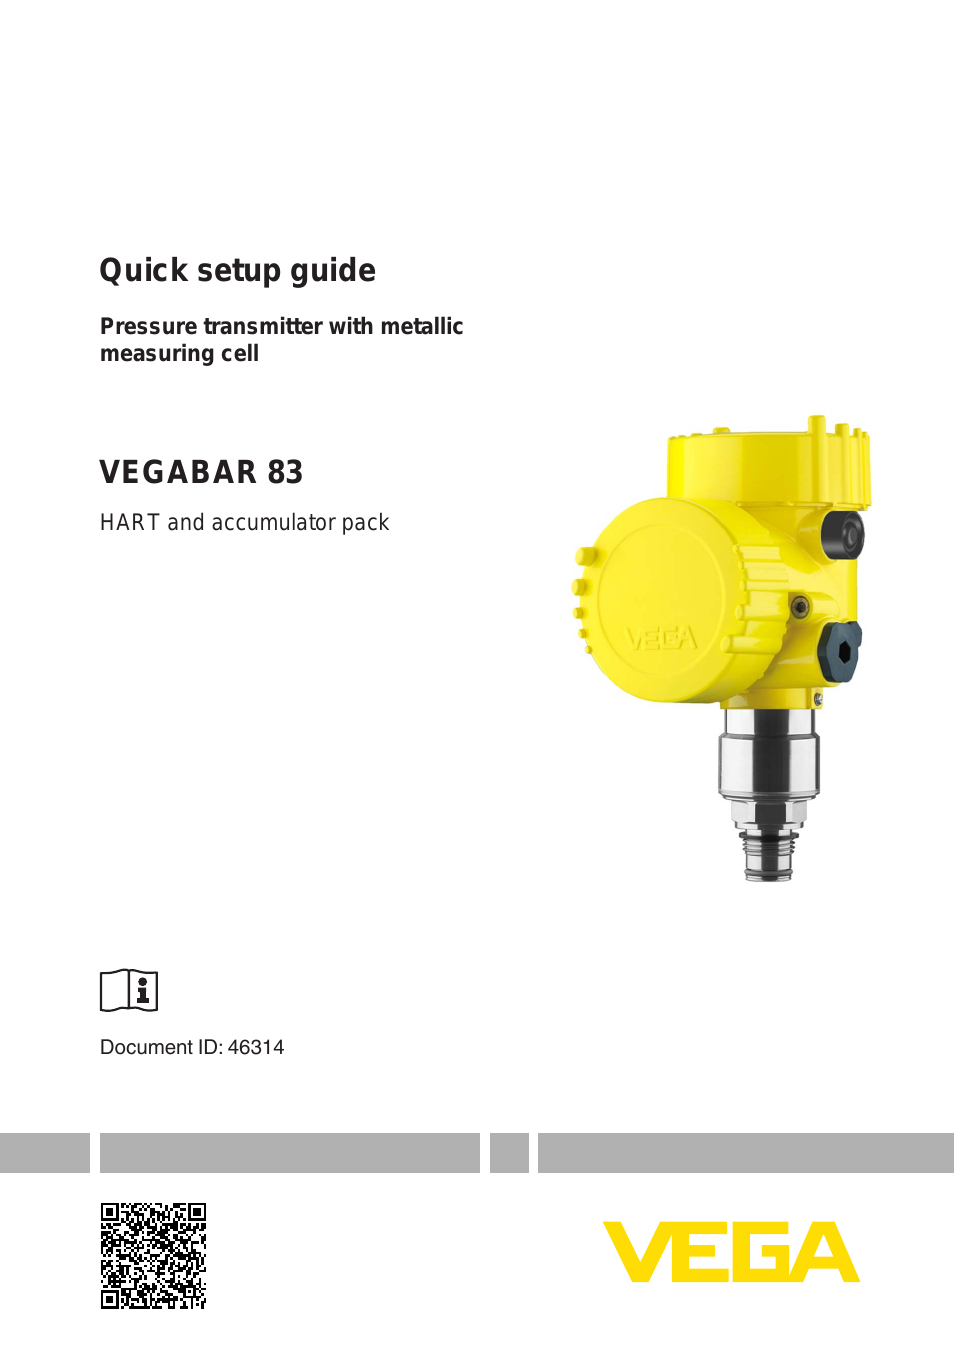 VEGABAR 83 HART and accumulator pack - Quick setup guide